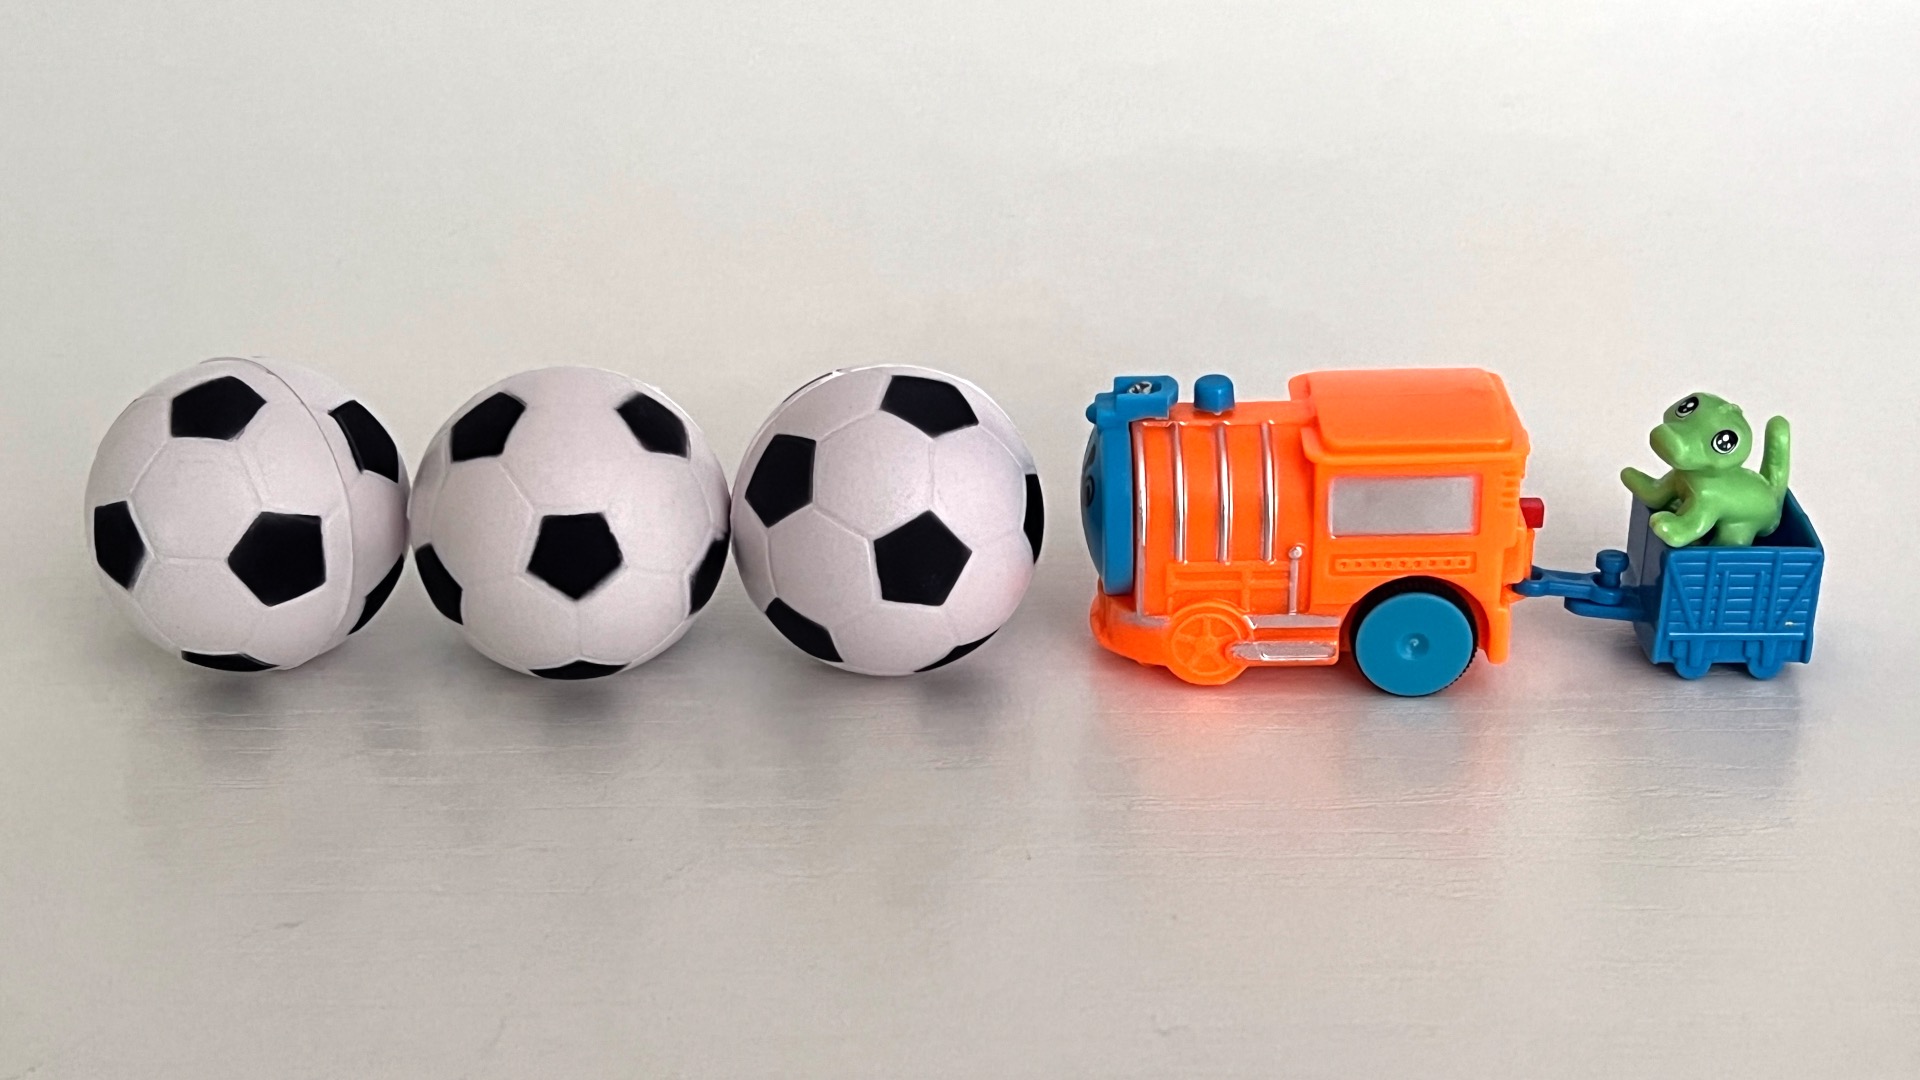 Гонка футбольных мячиков по игрушечной железной дороге  • АСМР для детей и взрослых